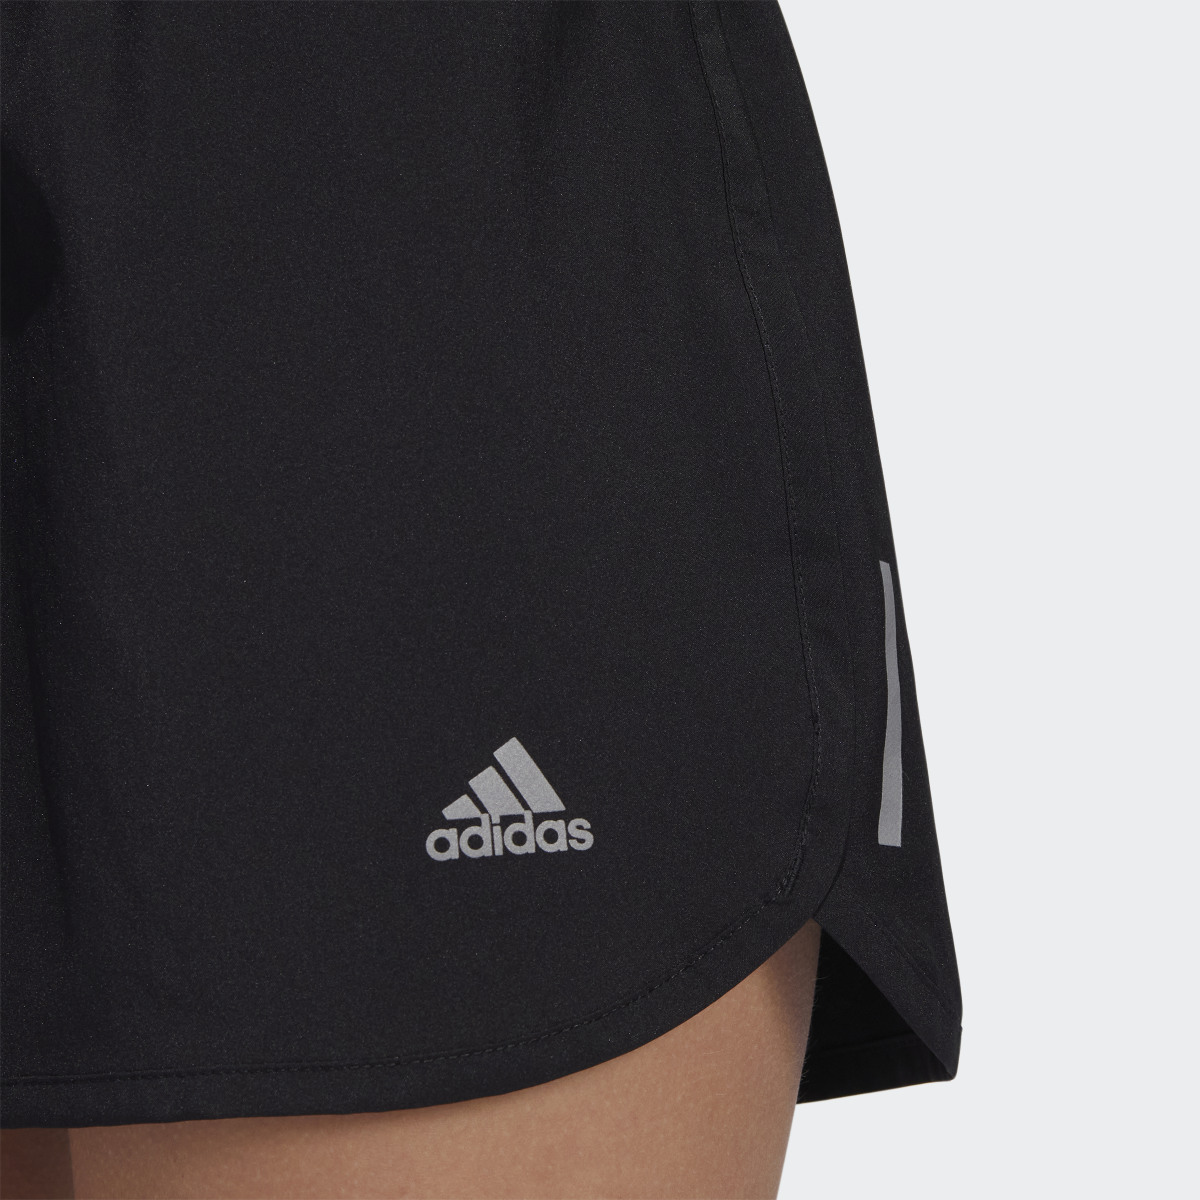 Adidas Running Shorts. 7